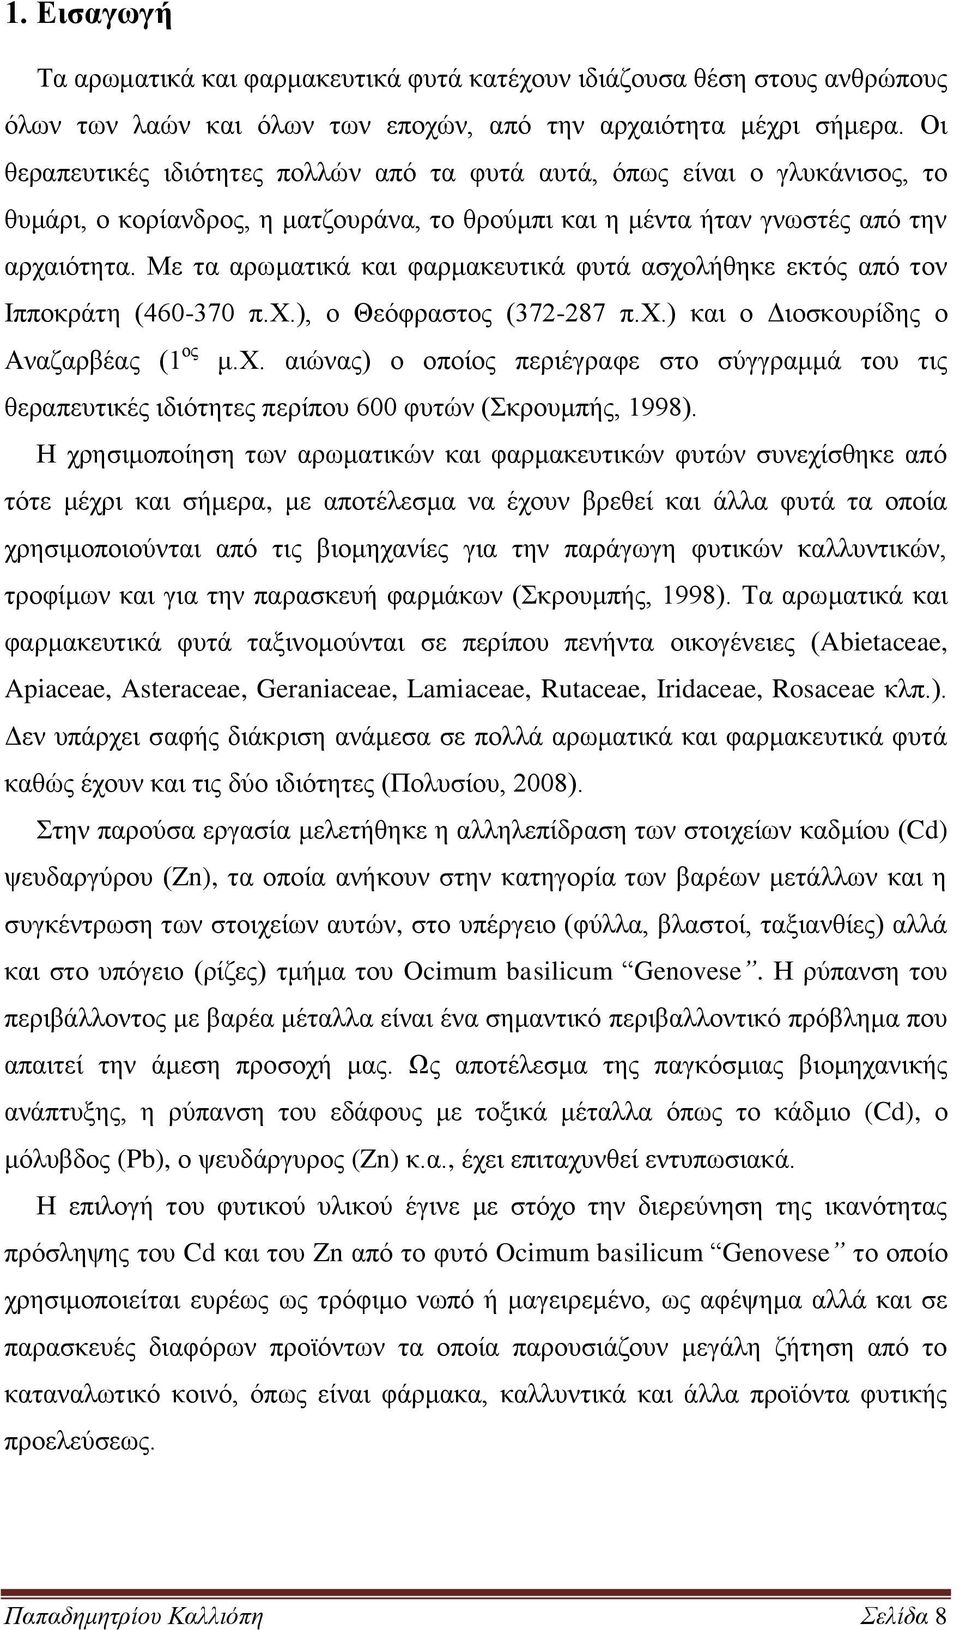 Με τα αρωματικά και φαρμακευτικά φυτά ασχολήθηκε εκτός από τον Ιπποκράτη (460-370 π.χ.), ο Θεόφραστος (372-287 π.χ.) και ο Διοσκουρίδης ο Αναζαρβέας (1 ος μ.χ. αιώνας) ο οποίος περιέγραφε στο σύγγραμμά του τις θεραπευτικές ιδιότητες περίπου 600 φυτών (Σκρουμπής, 1998).